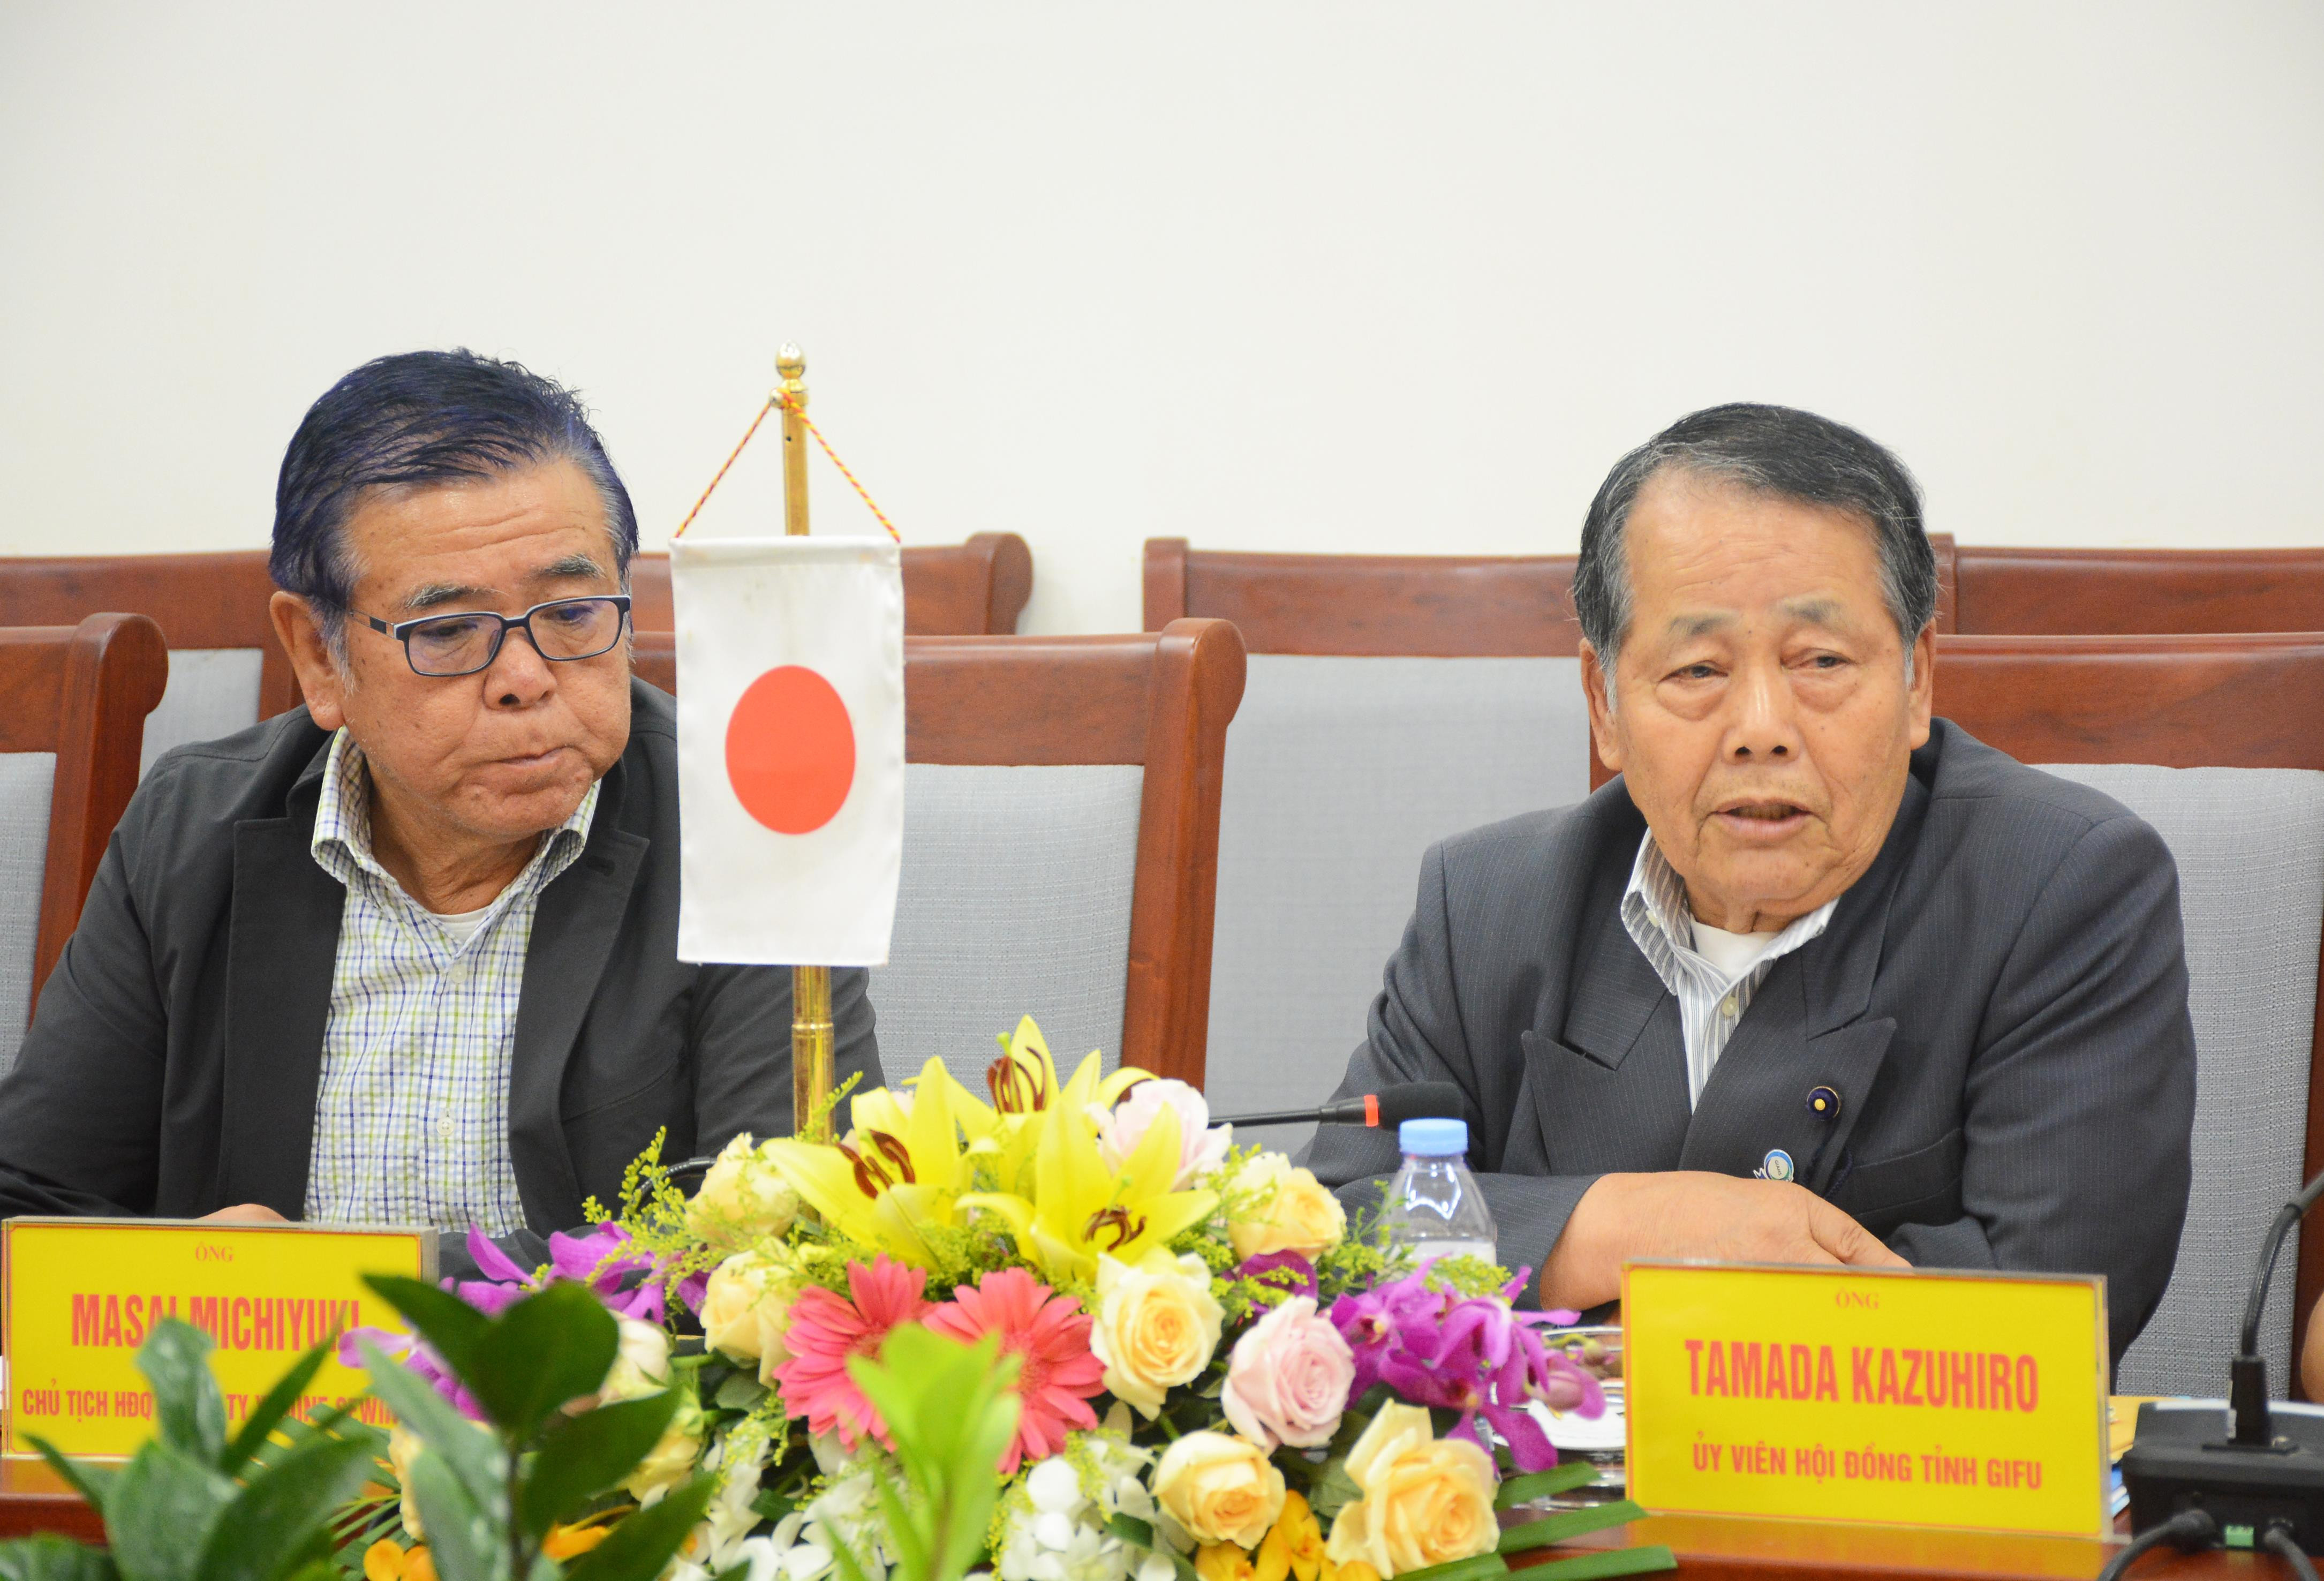 Ông Kazuhiro Tamada cam kết sẽ là cầu nối thúc đẩy hợp tác giữa Gifu với Nghệ An trên nhiều lĩnh vực. Ảnh: Thu Giang